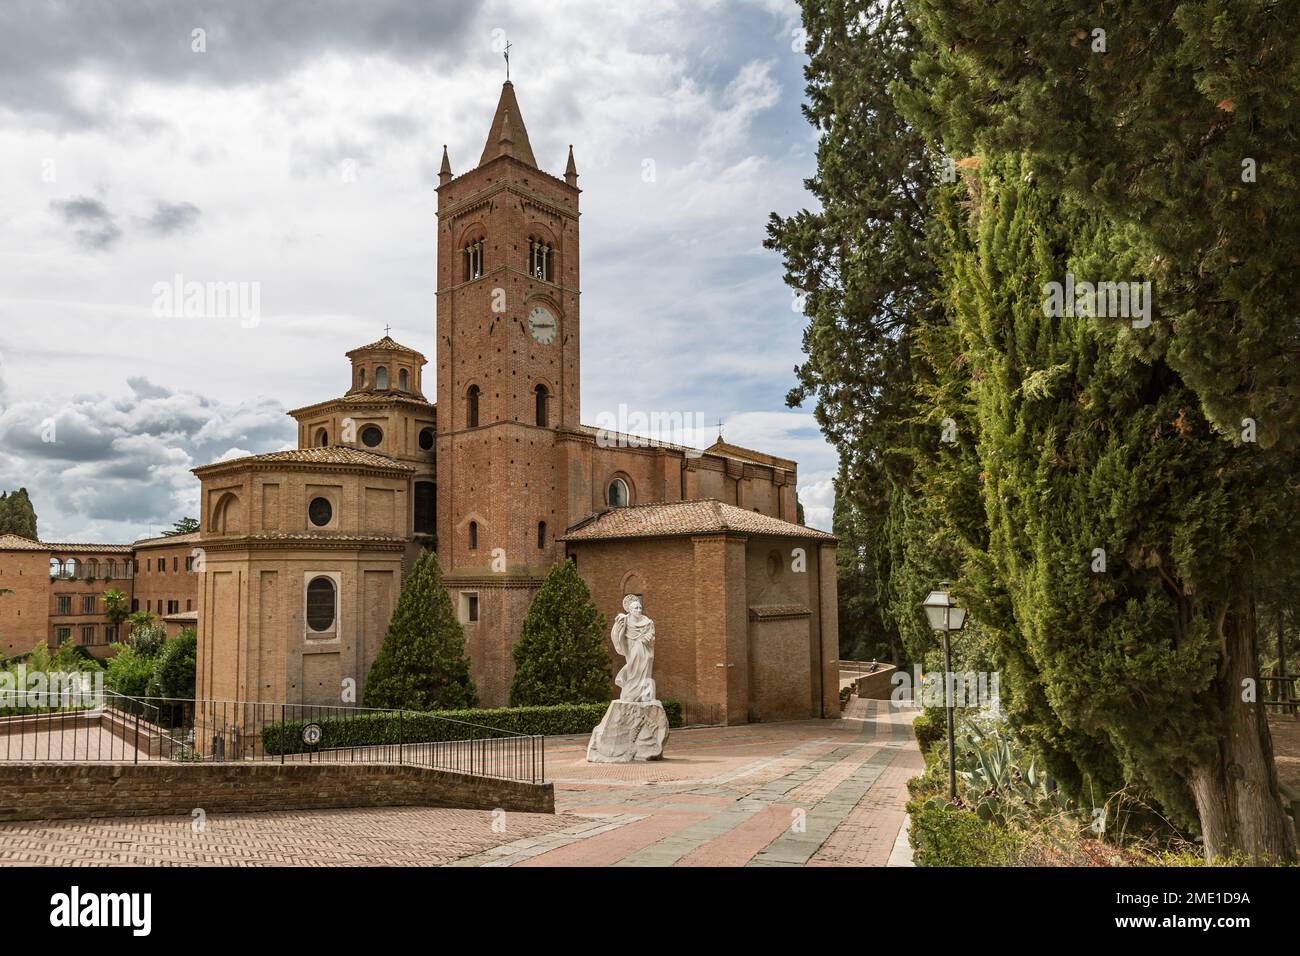 Abbazia di Monte Oliveto Maggiore, a large Benedictine monastery in Tuscany, Italy. Stock Photo